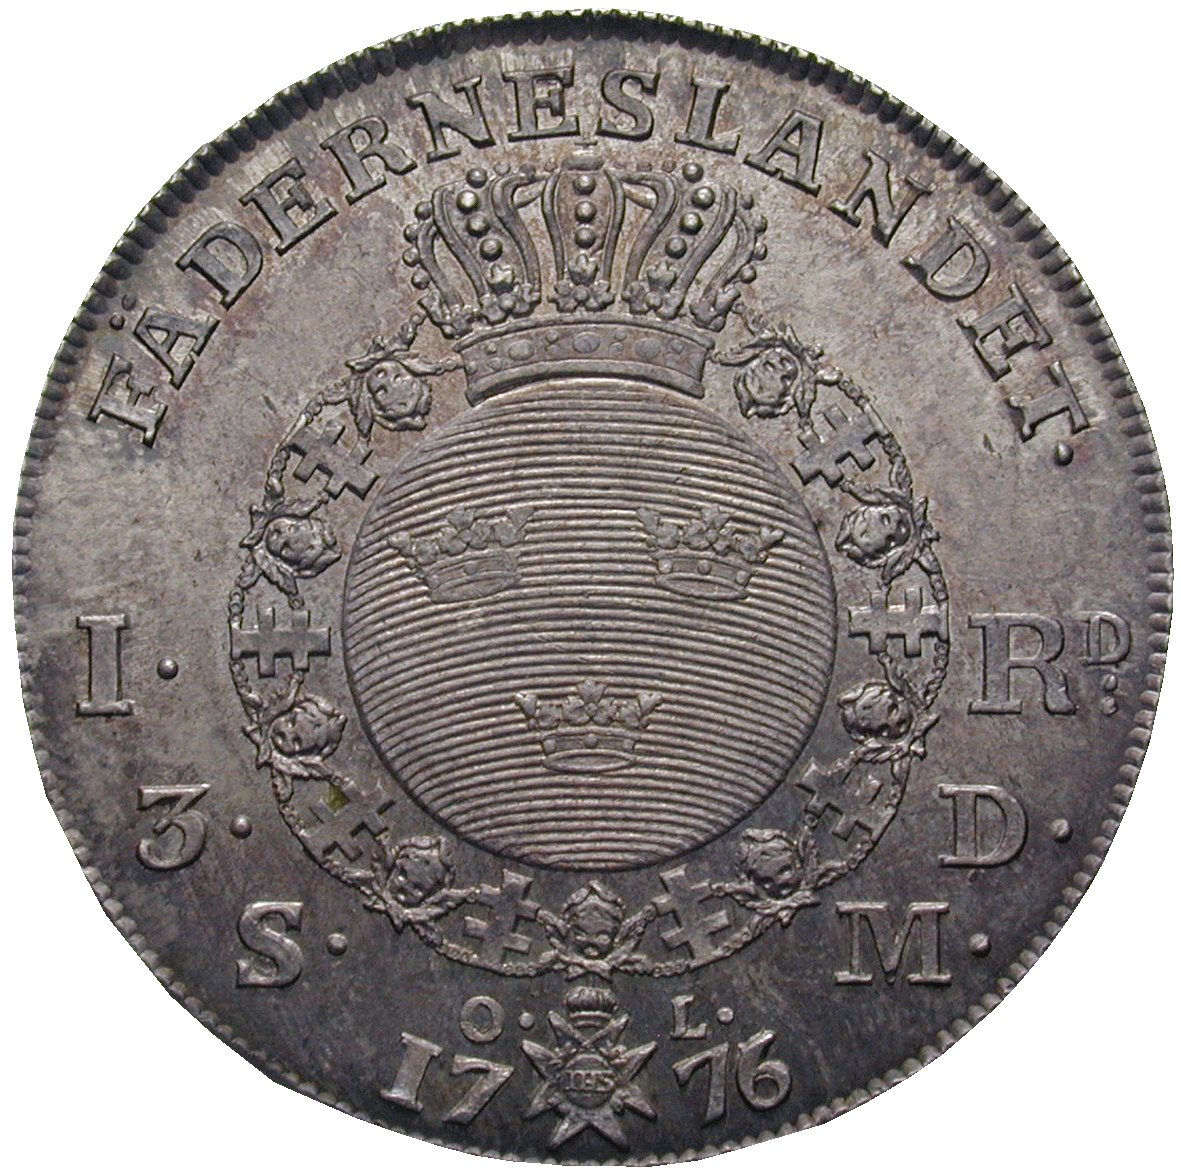 Königreich Schweden, Gustav III., Riksdaler 1776 (reverse)